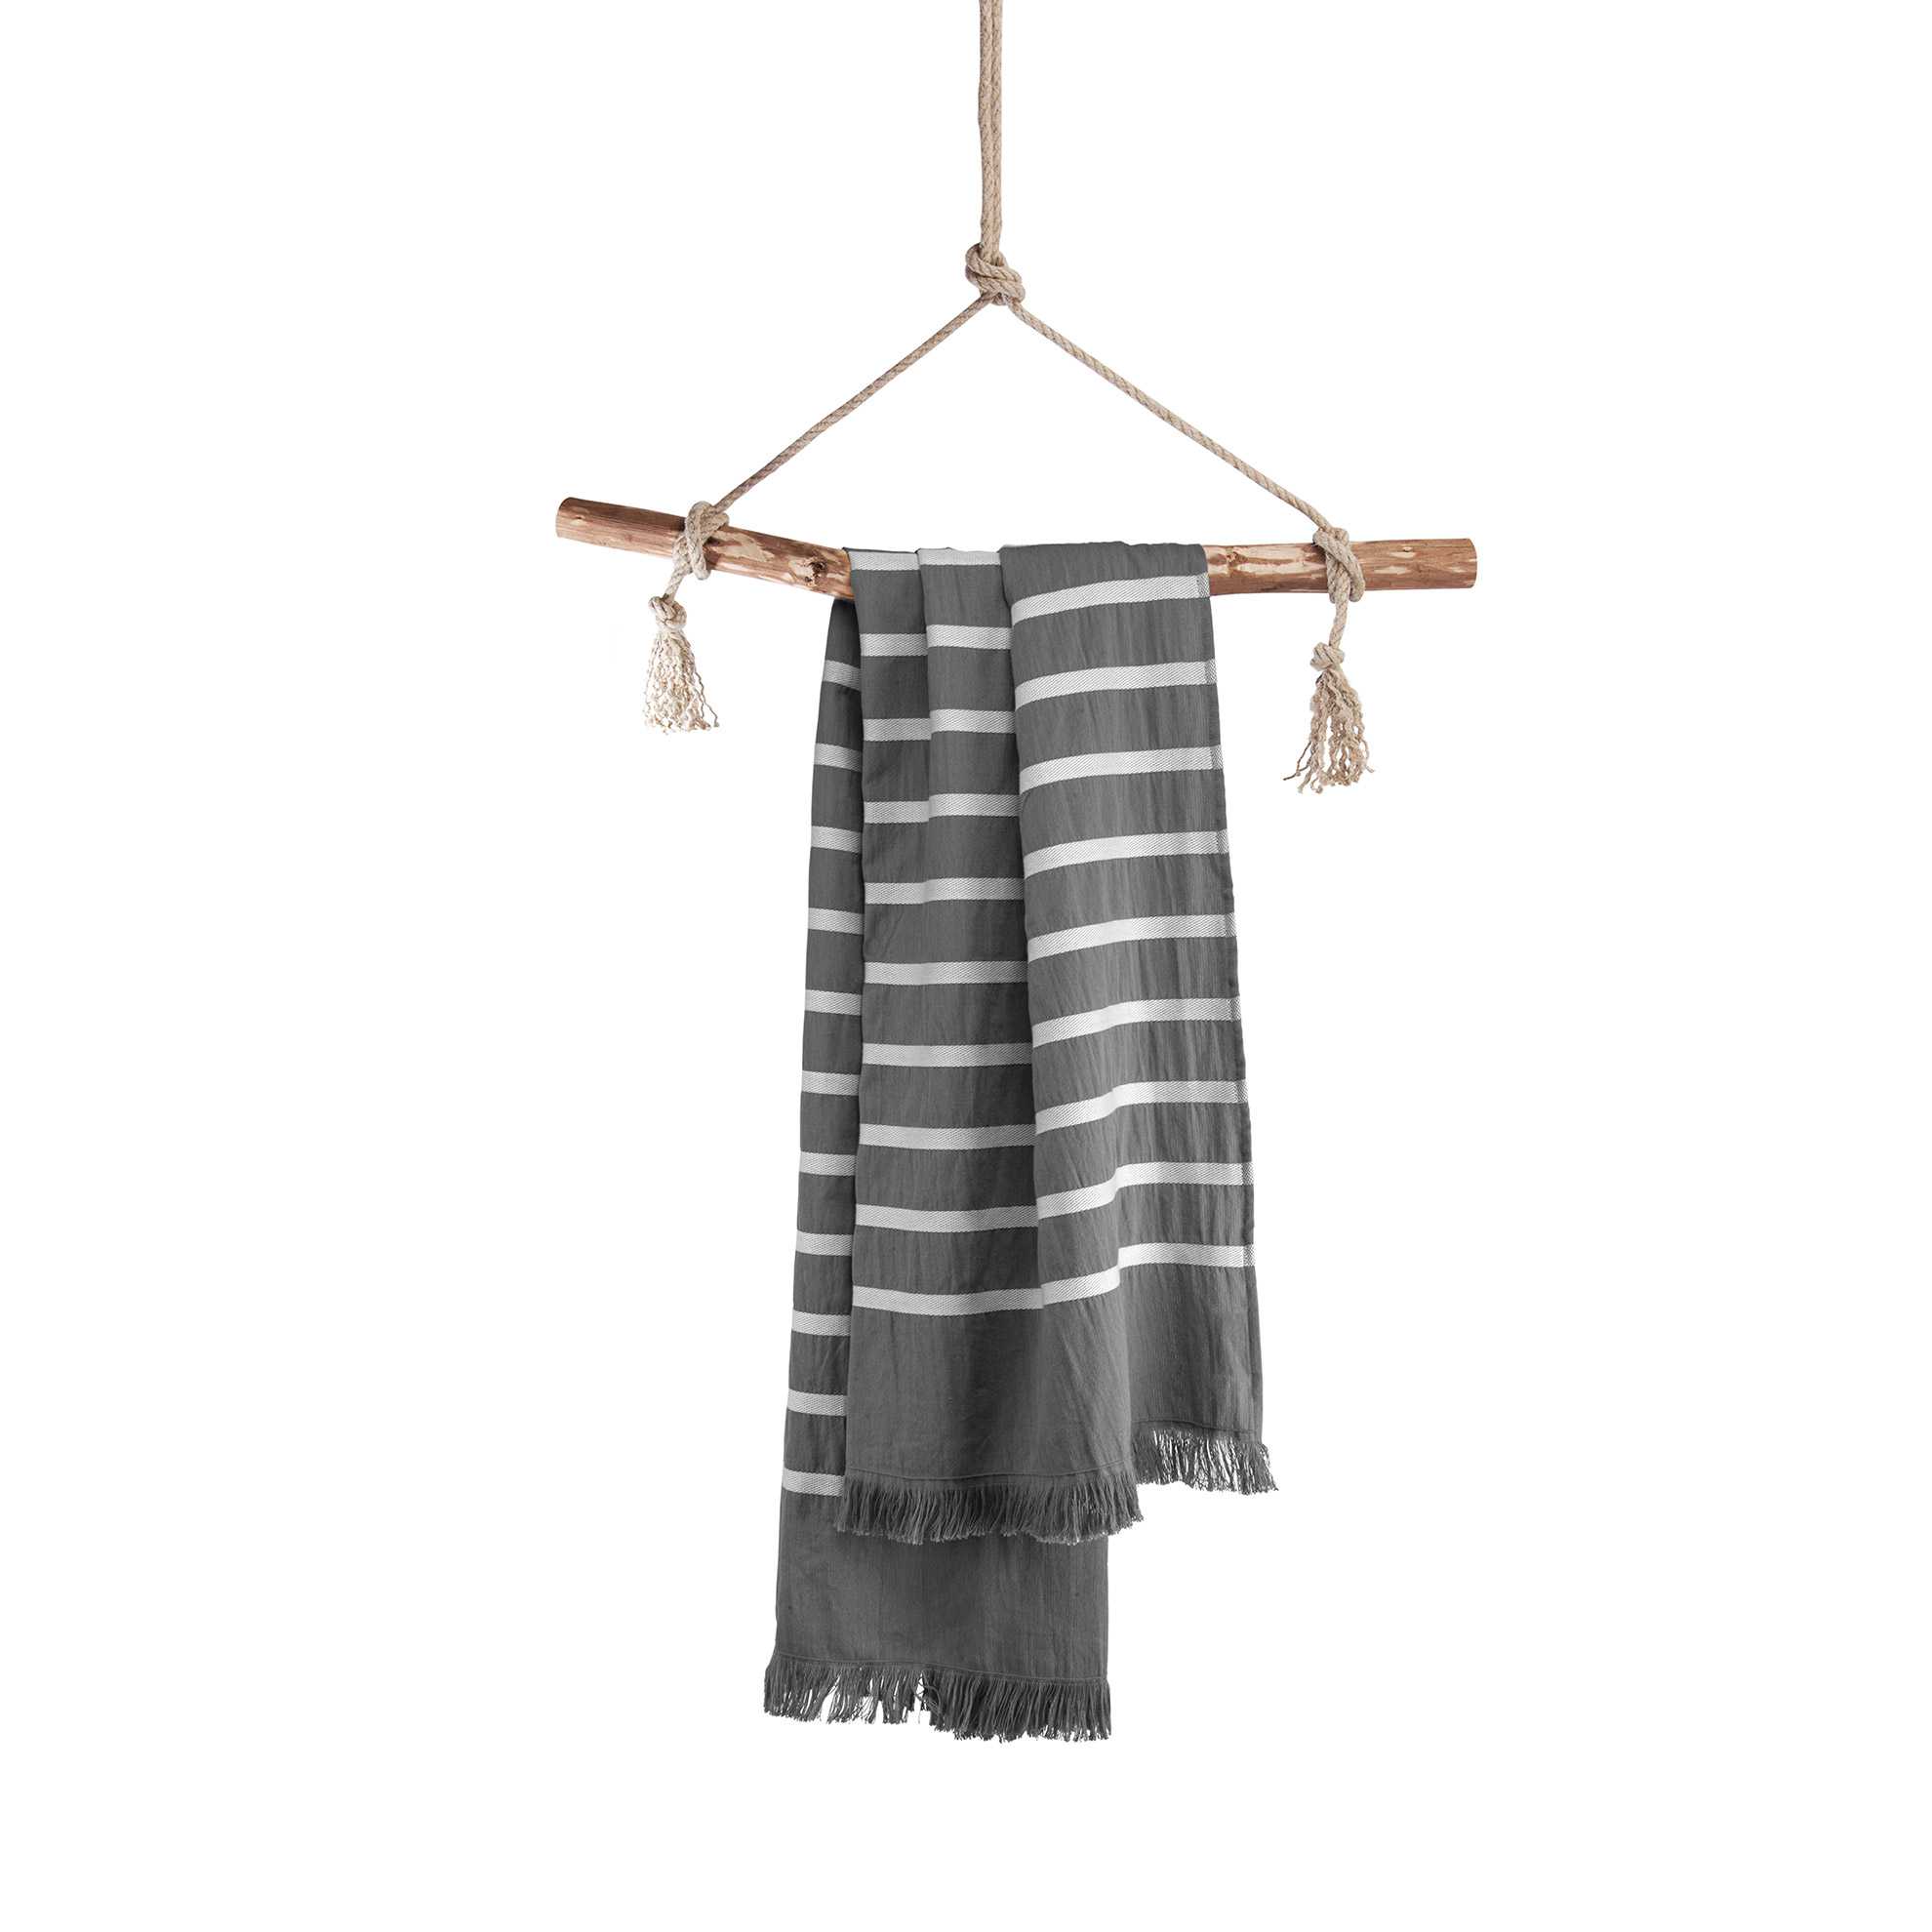 Fouta Hammam Towel Sunny Stripes 100x180cm - i-rewardshop.com